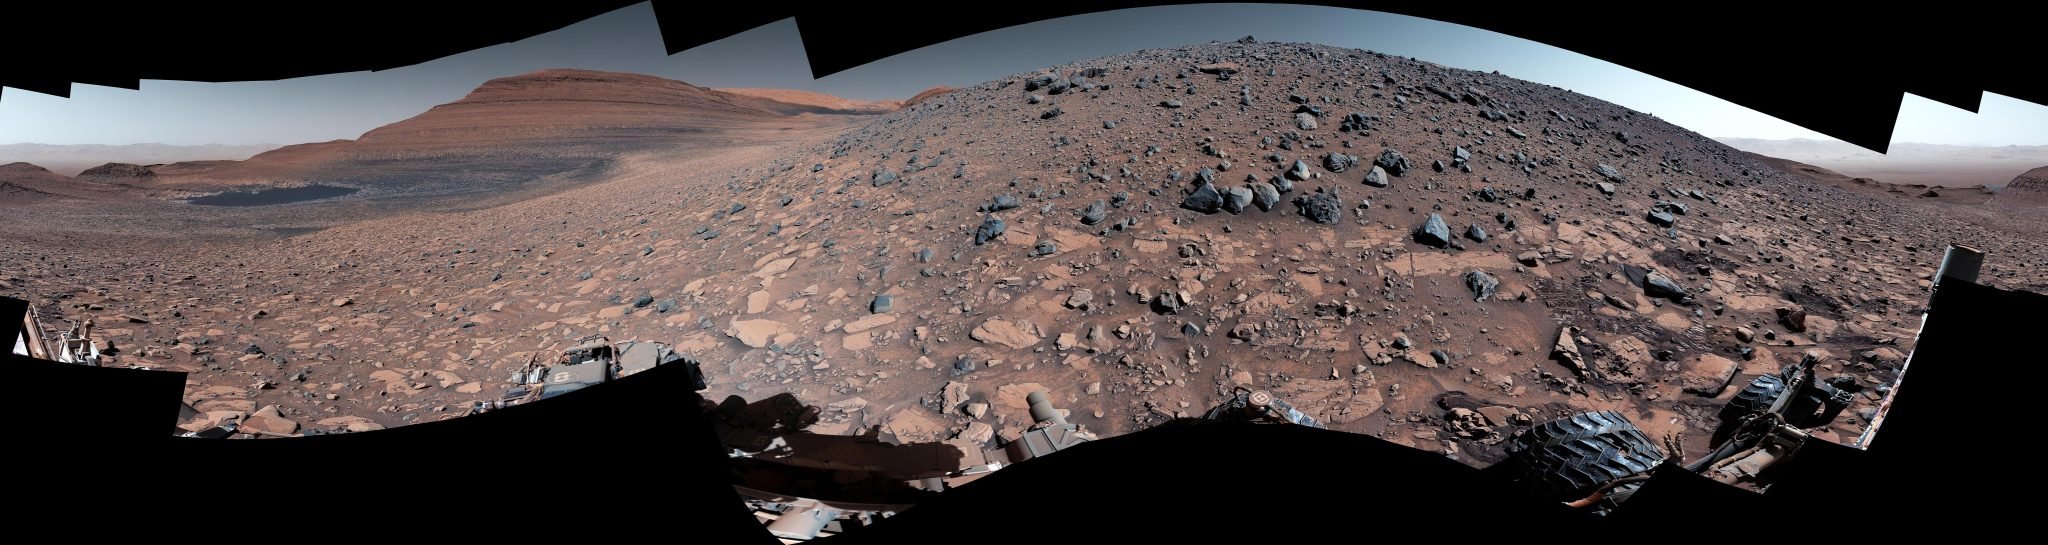 Το ρόβερ Curiosity της NASA φτάνει στην άκρη του Άρη όπου το νερό άφησε συσσώρευση συντριμμιών